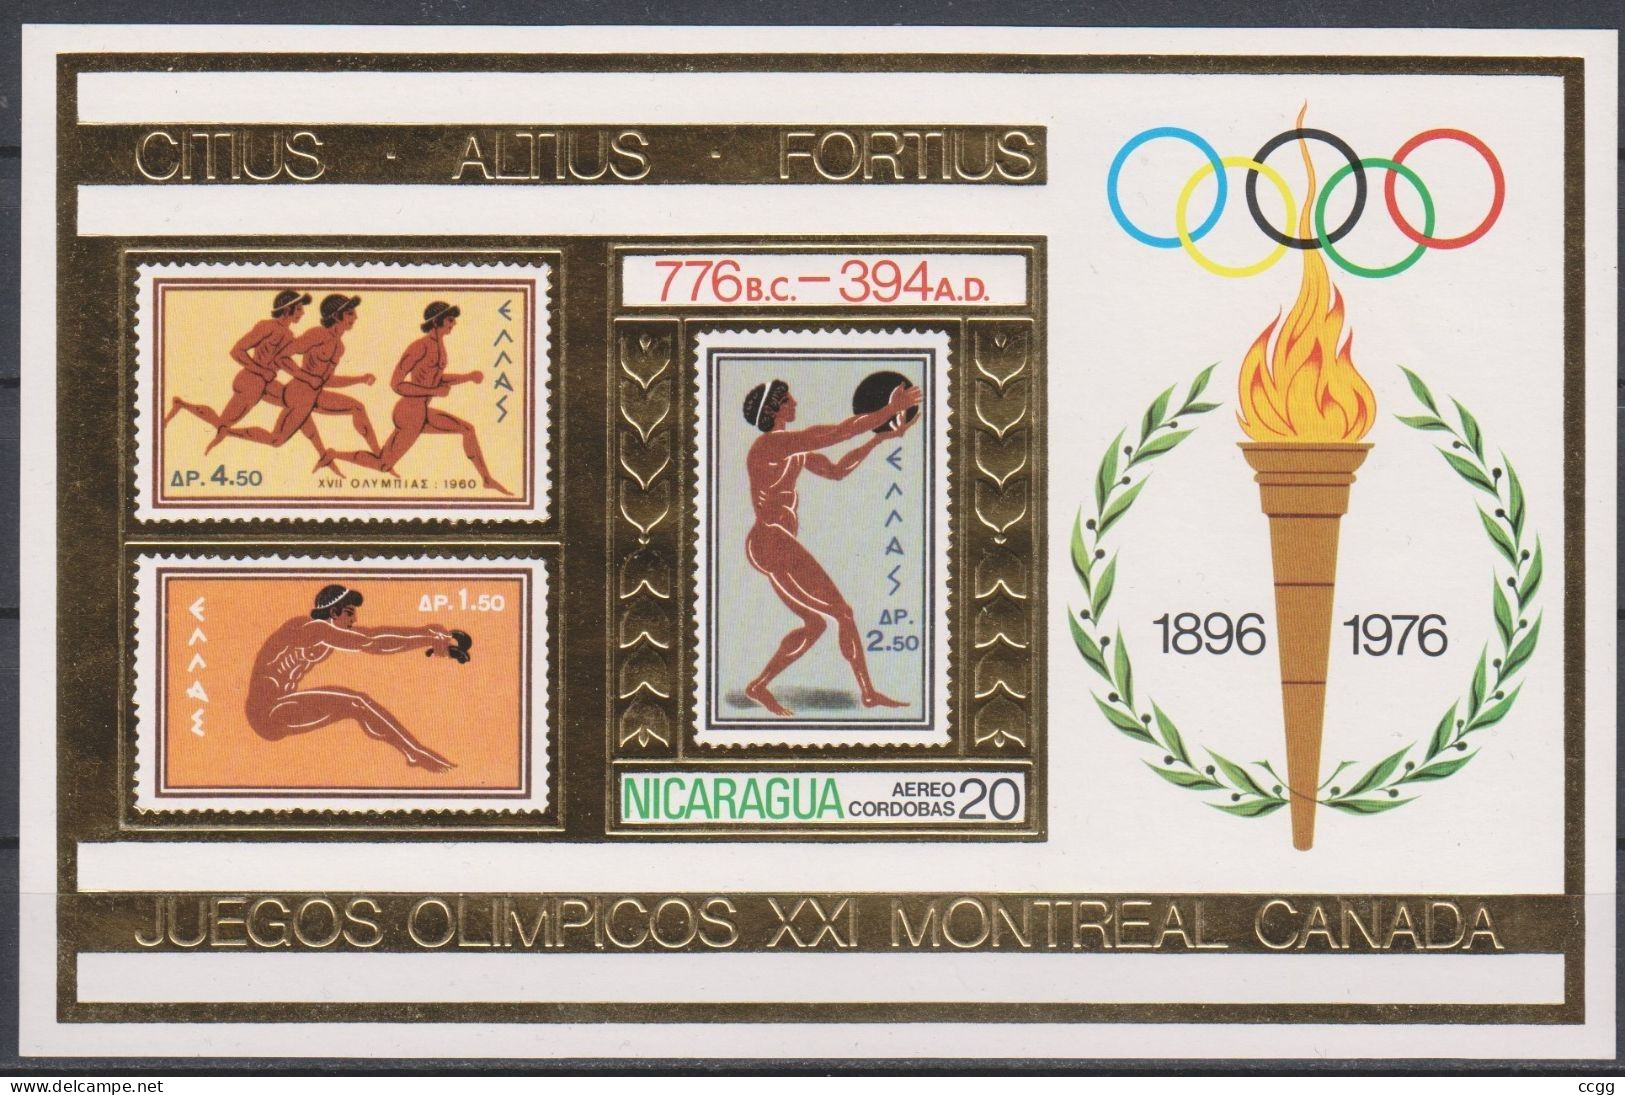 Olympische Spelen  1976 , Nicaragua  - Blok Postfris - Zomer 1976: Montreal